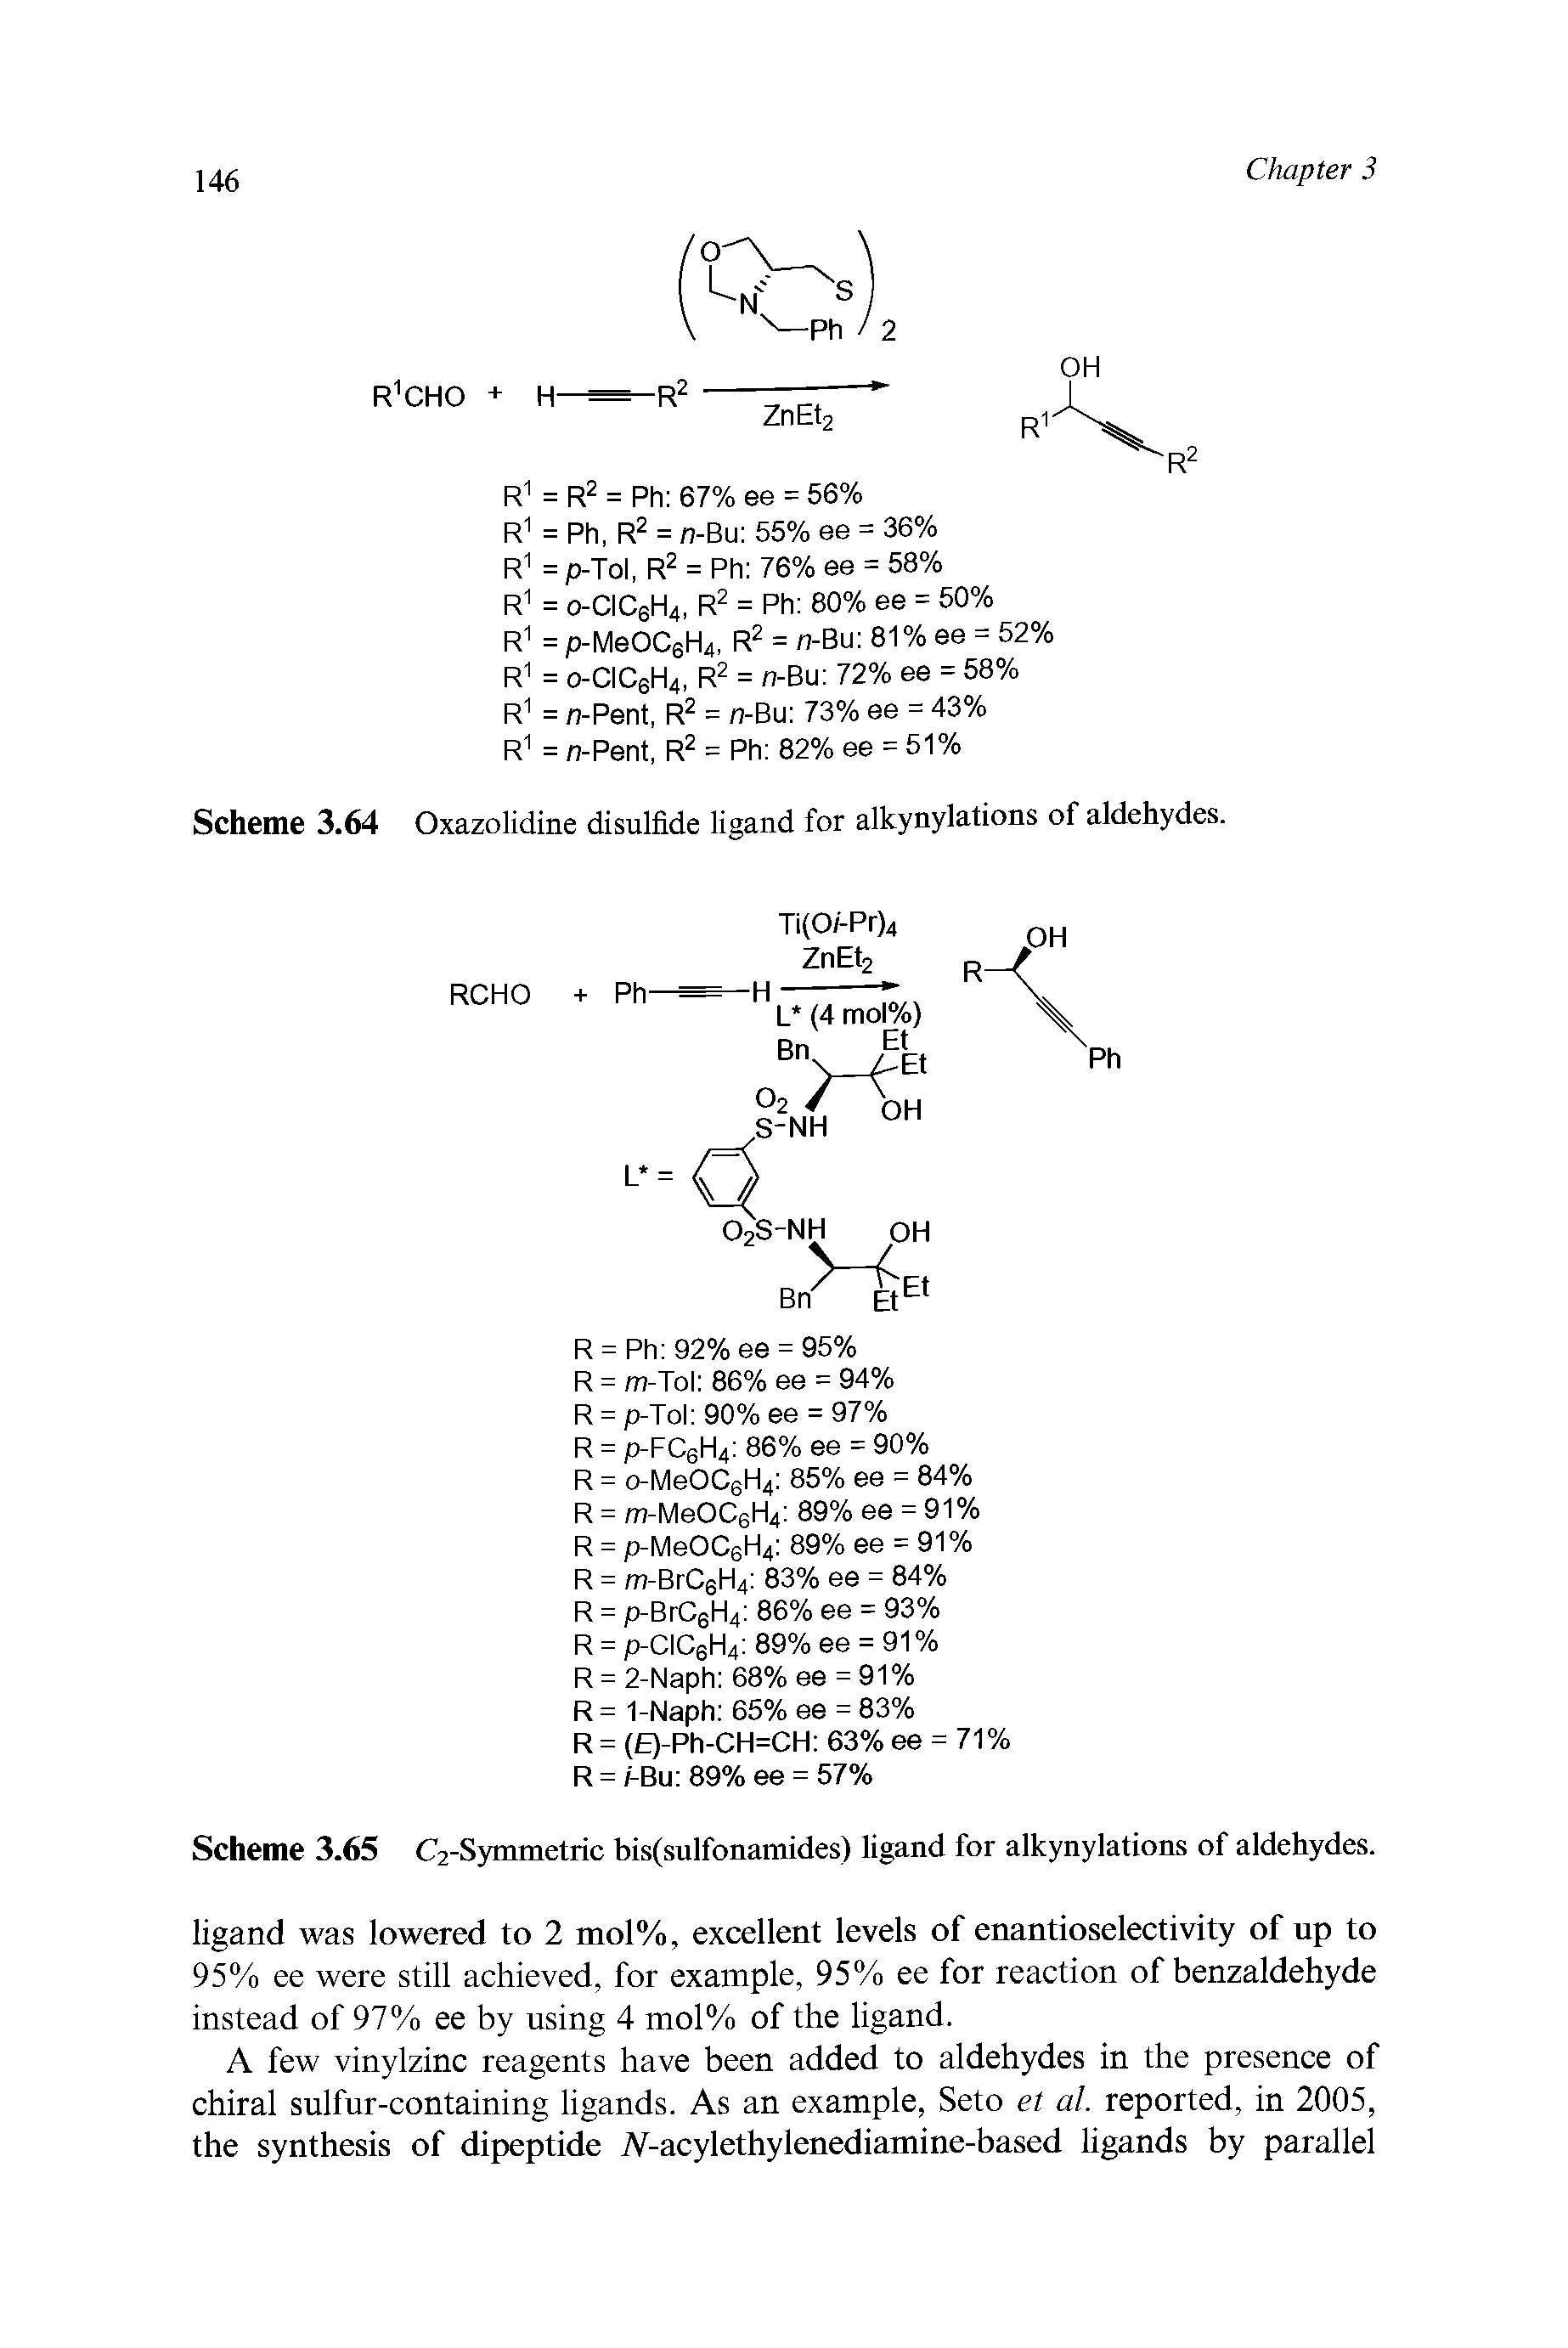 Scheme 3.65 C2-Symmetric bis(sulfonamides) ligand for alkynylations of aldehydes.